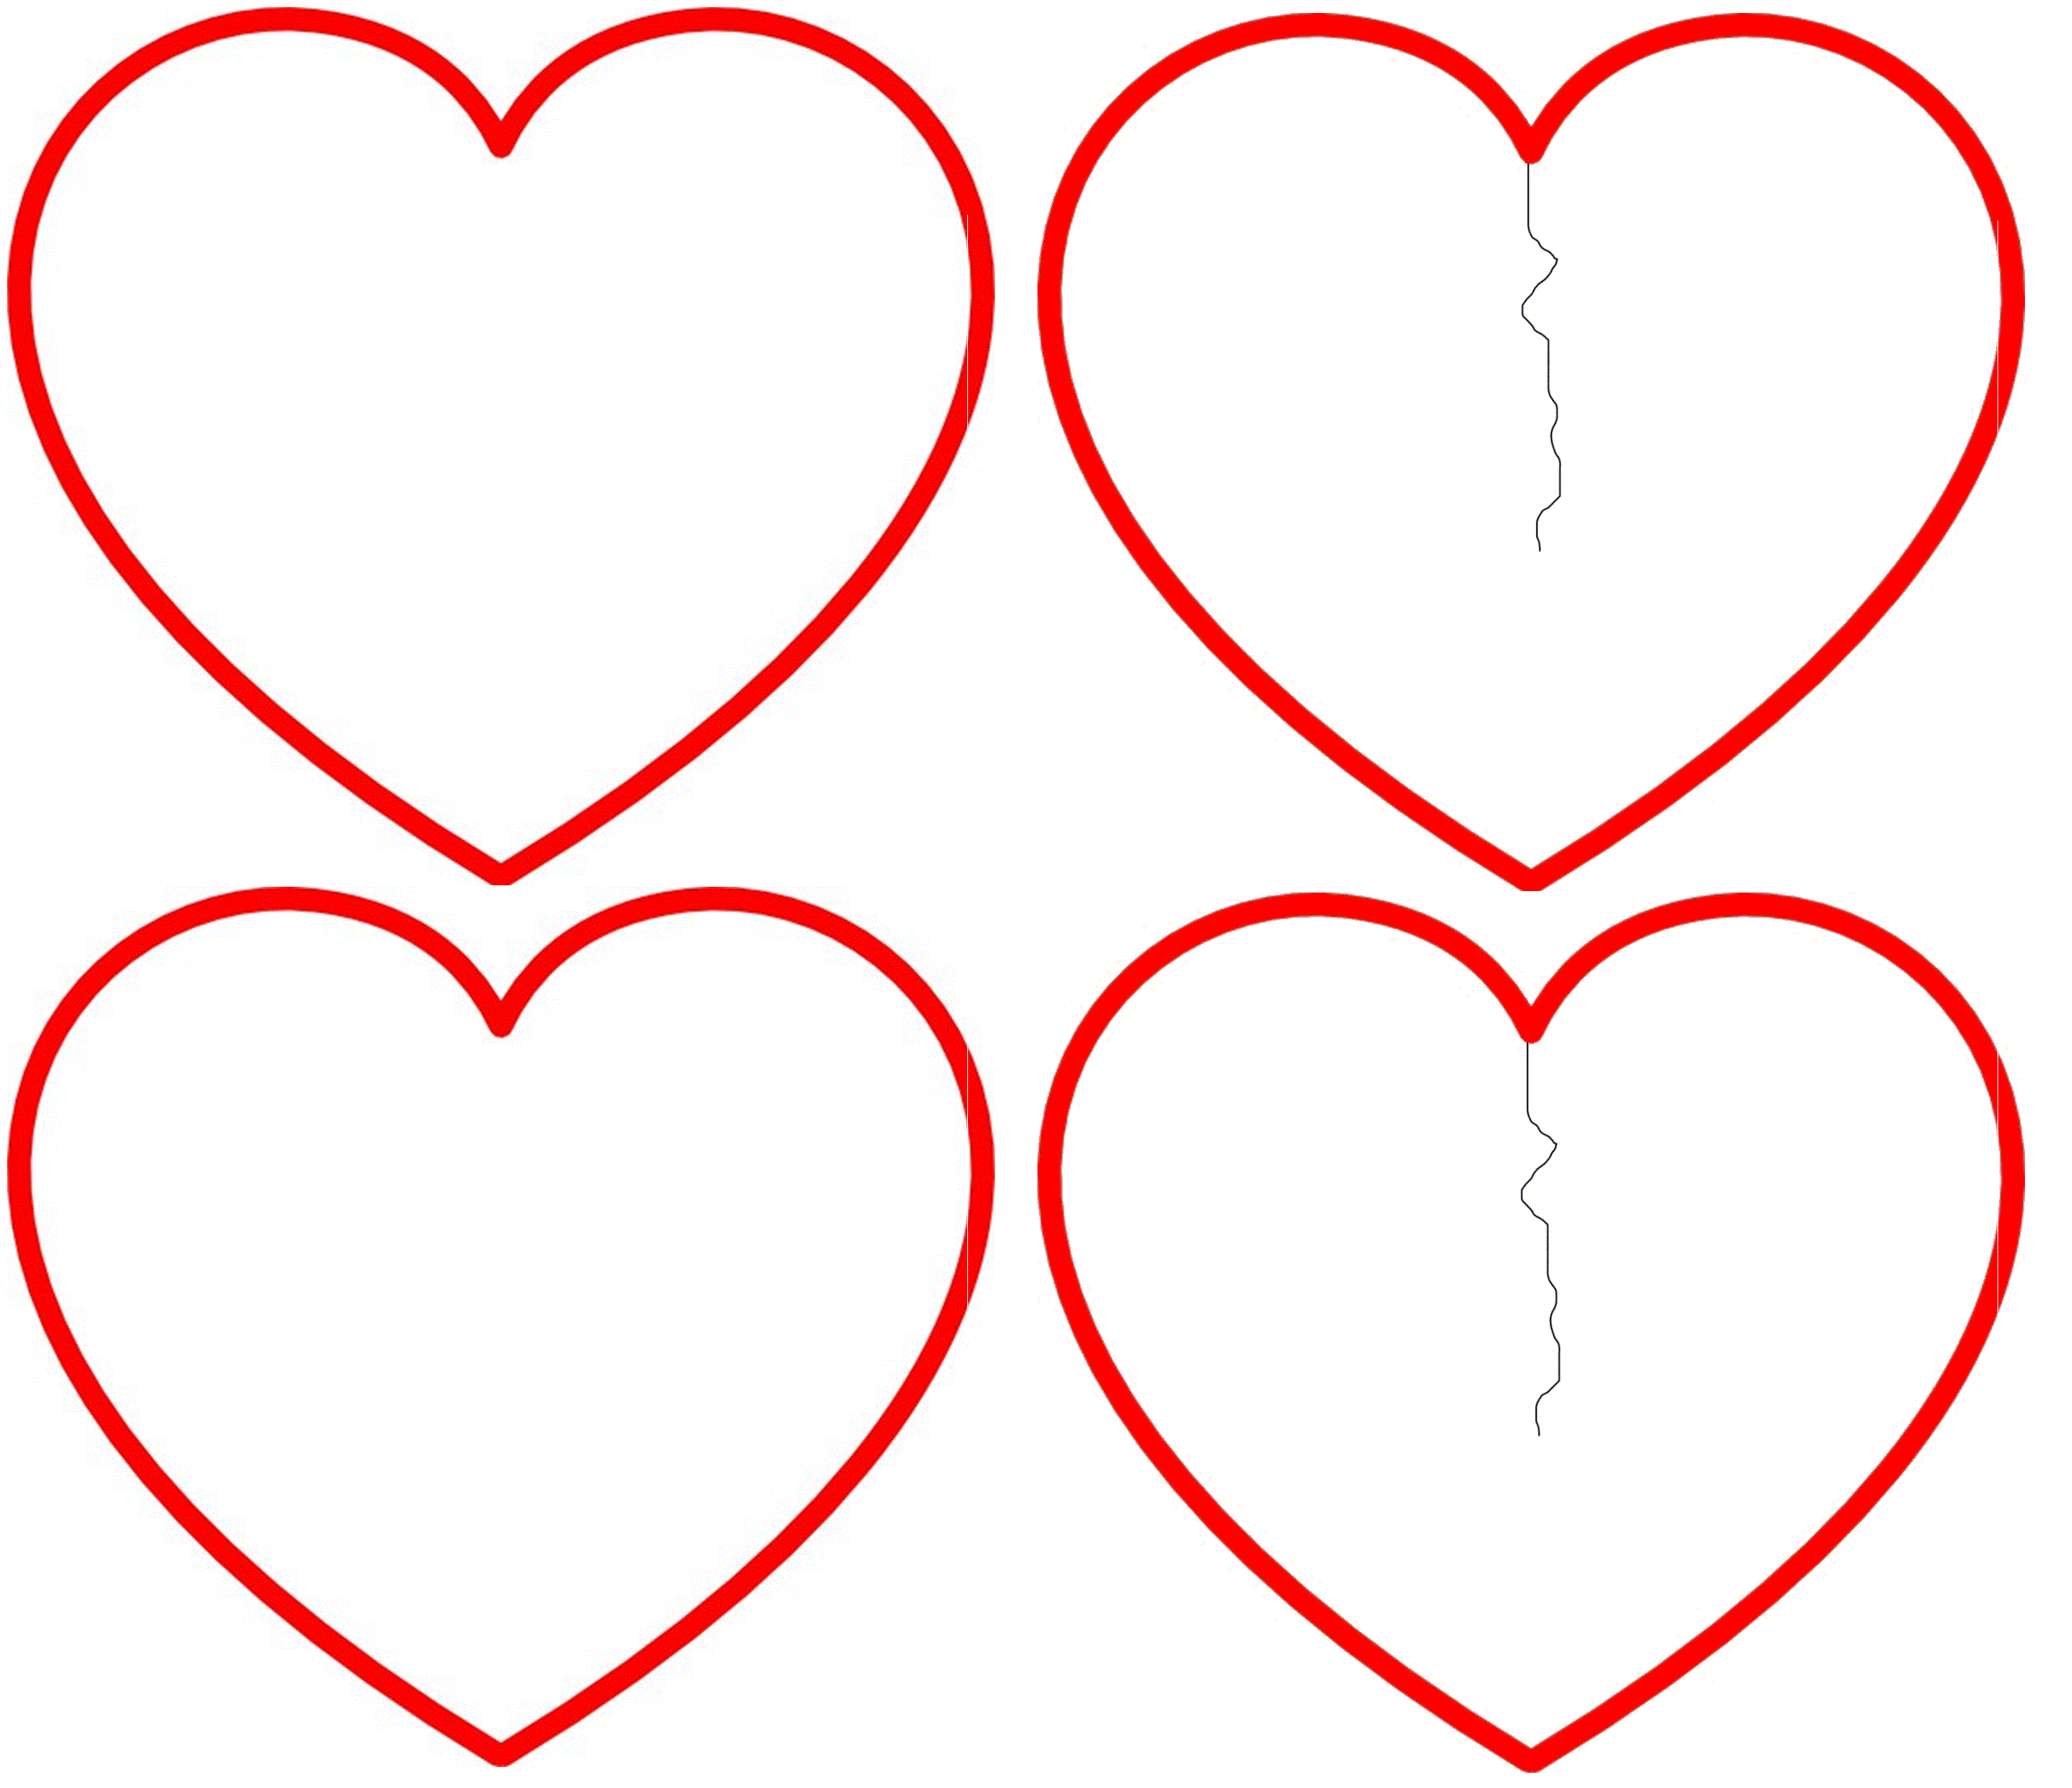 Шаблоны сердечек разных размеров для вырезания